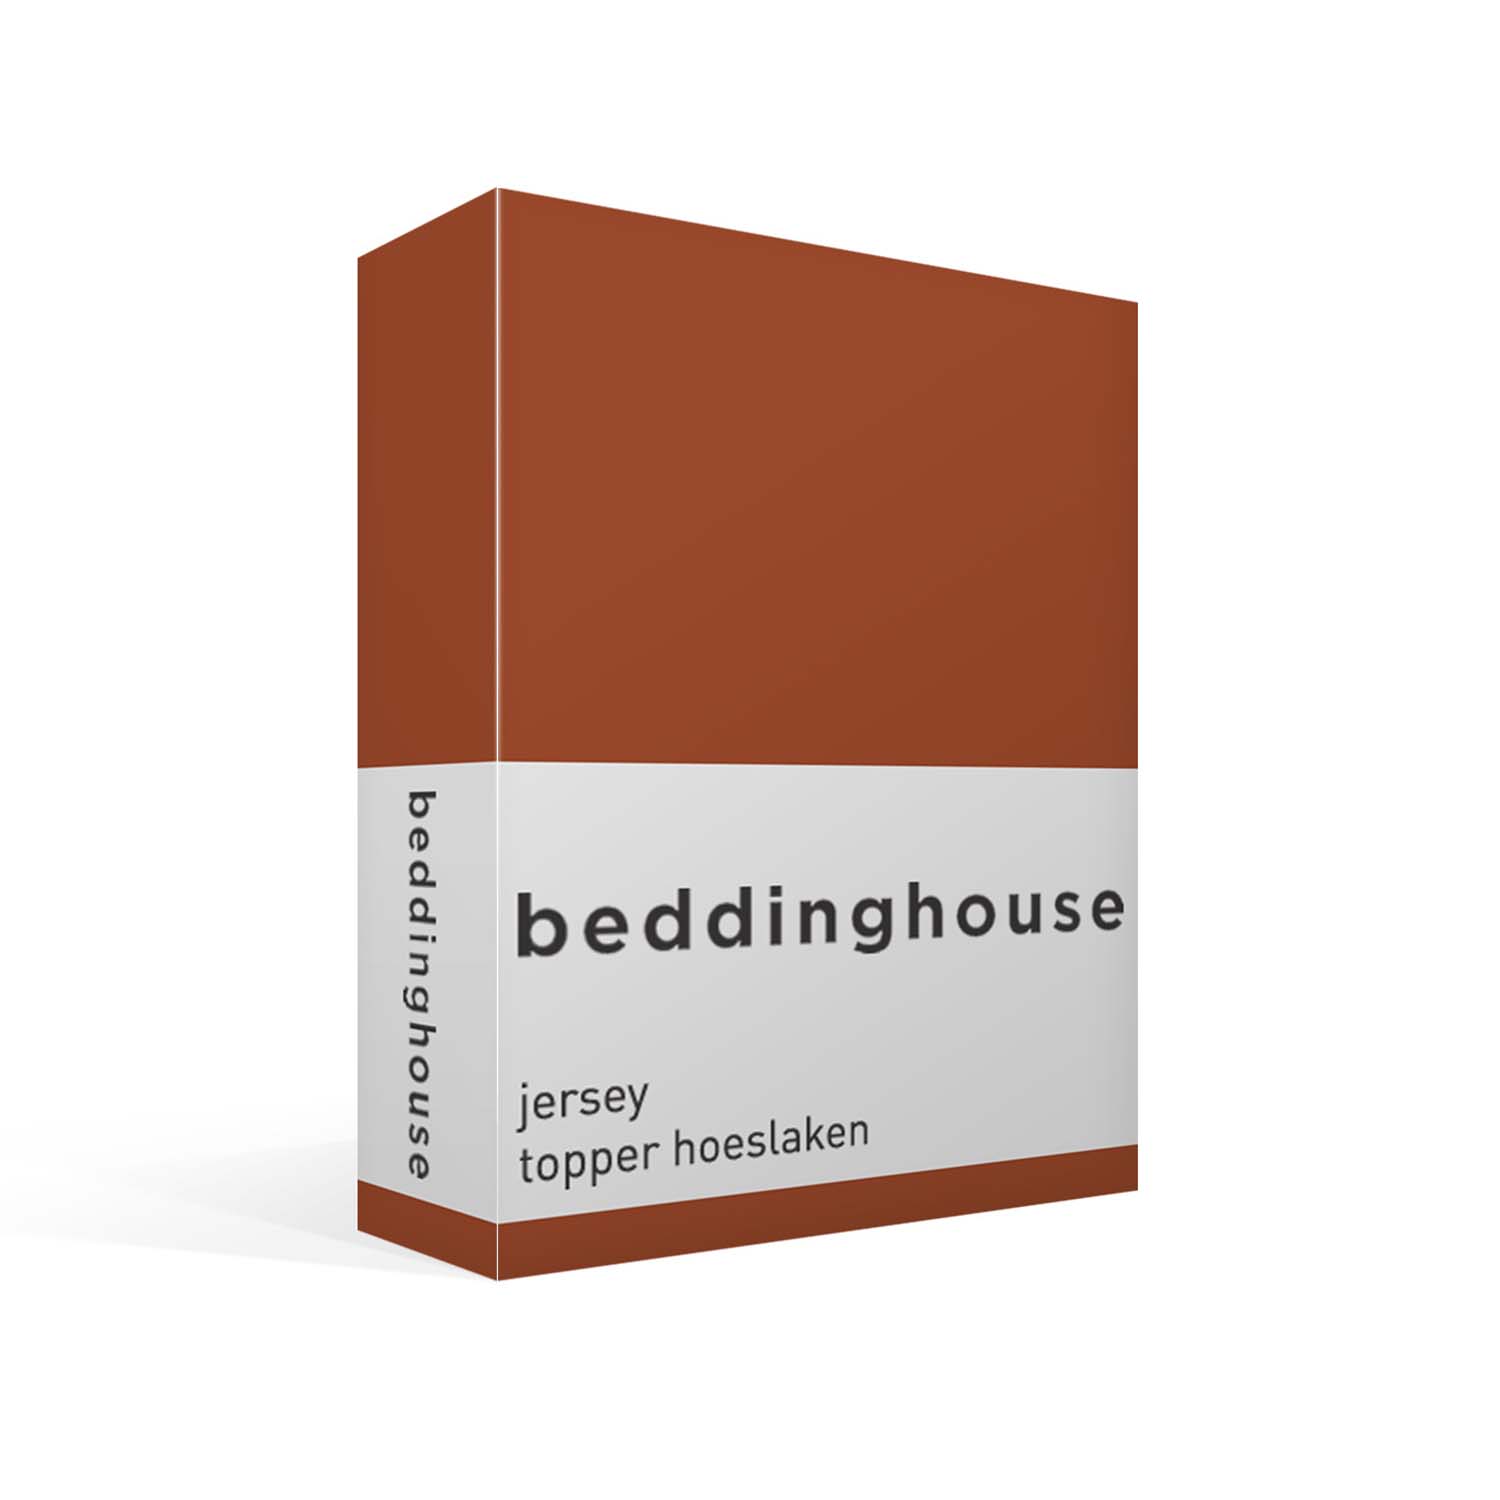 Beddinghouse jersey topper hoeslaken - terra